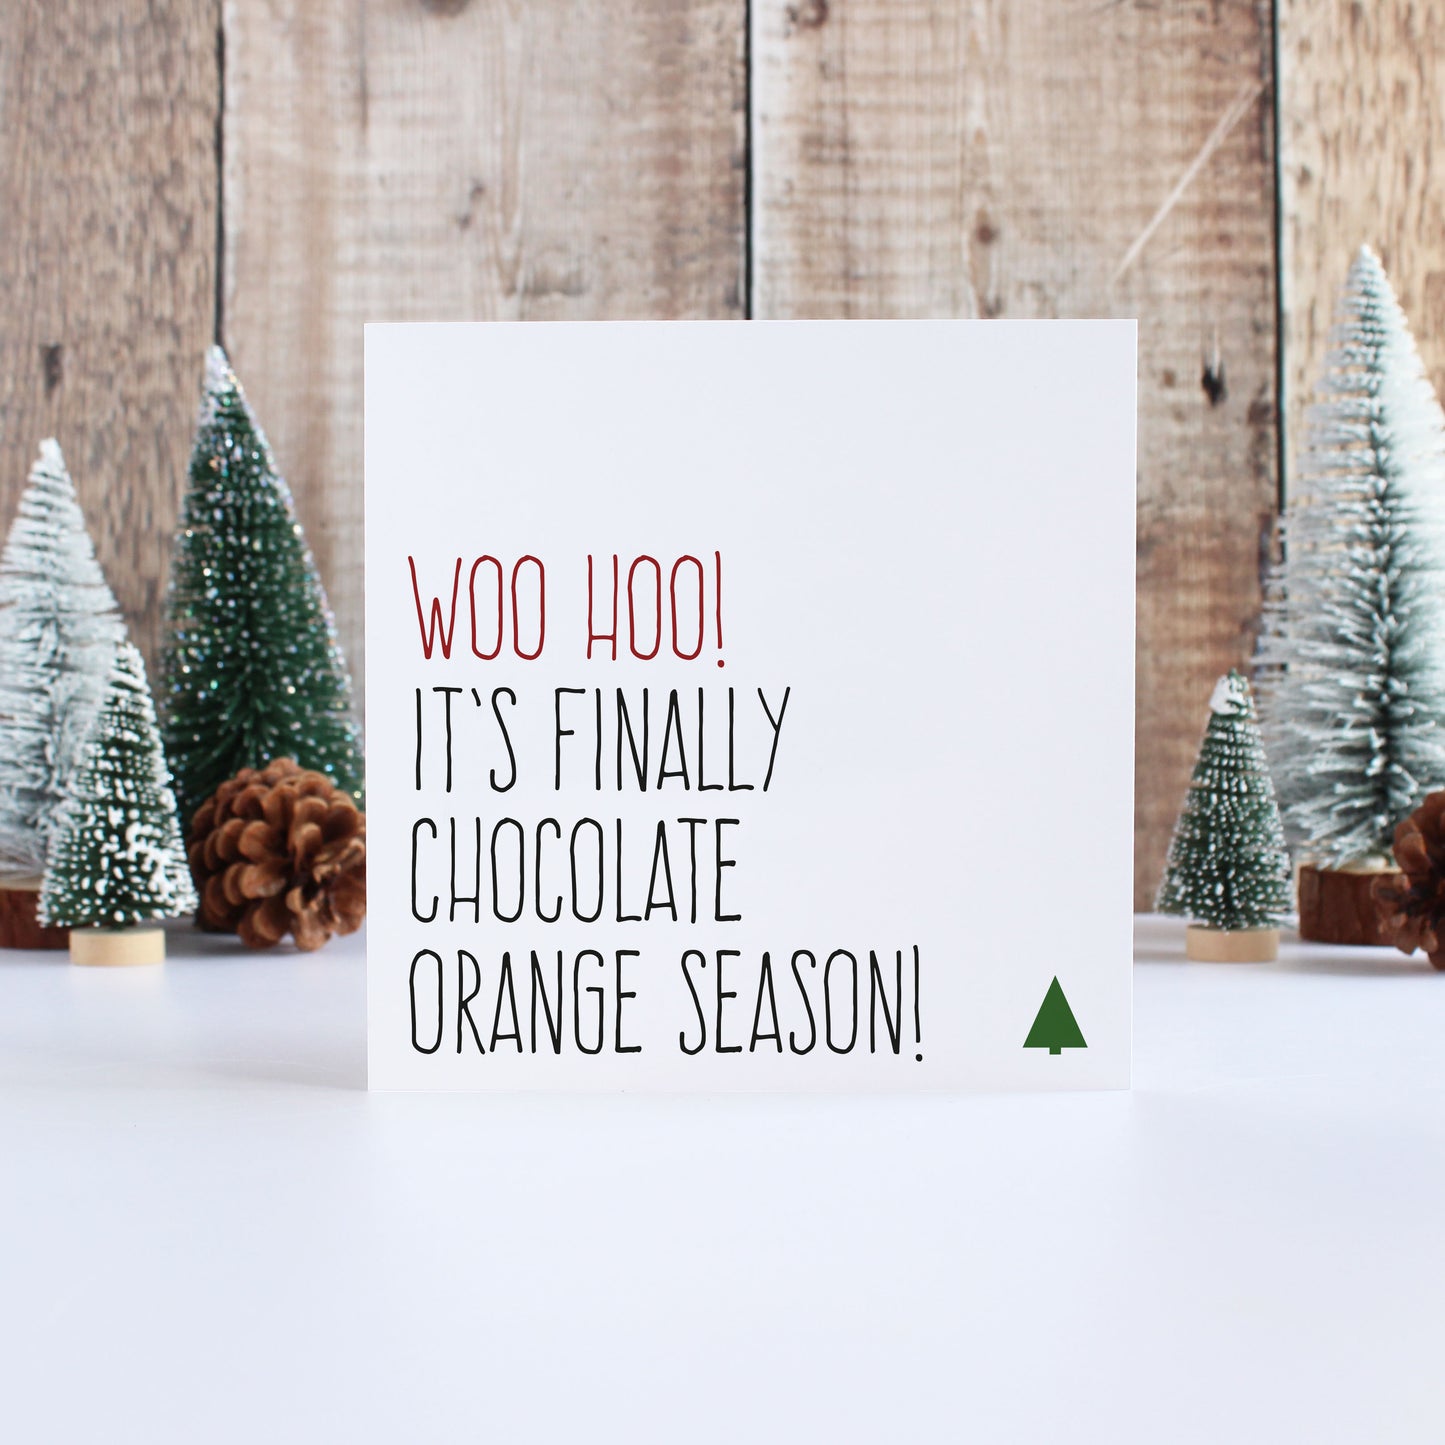 Chocolate orange season Christmas card